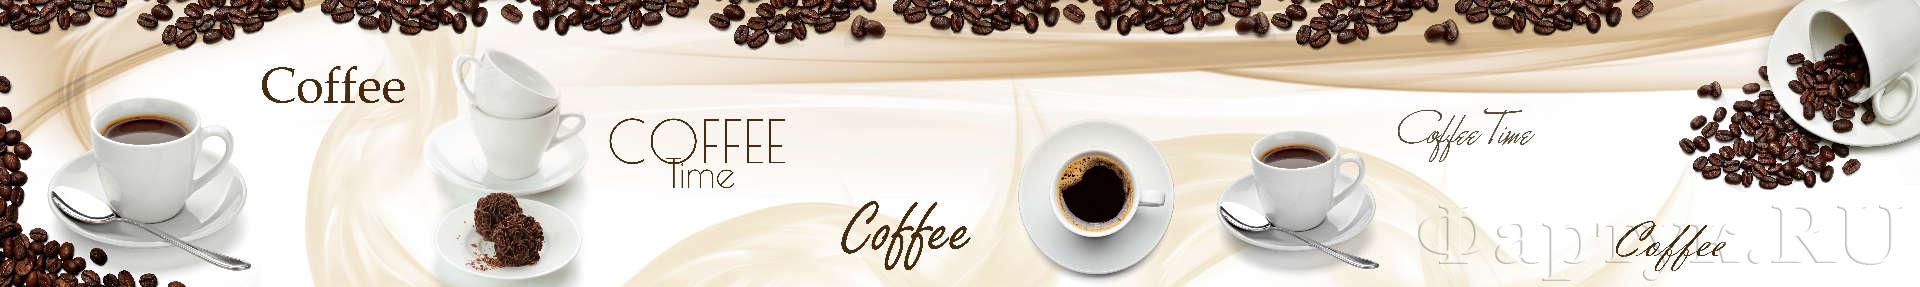 Ароматный кофе в белых чашках, кофейные зерна и сладости 